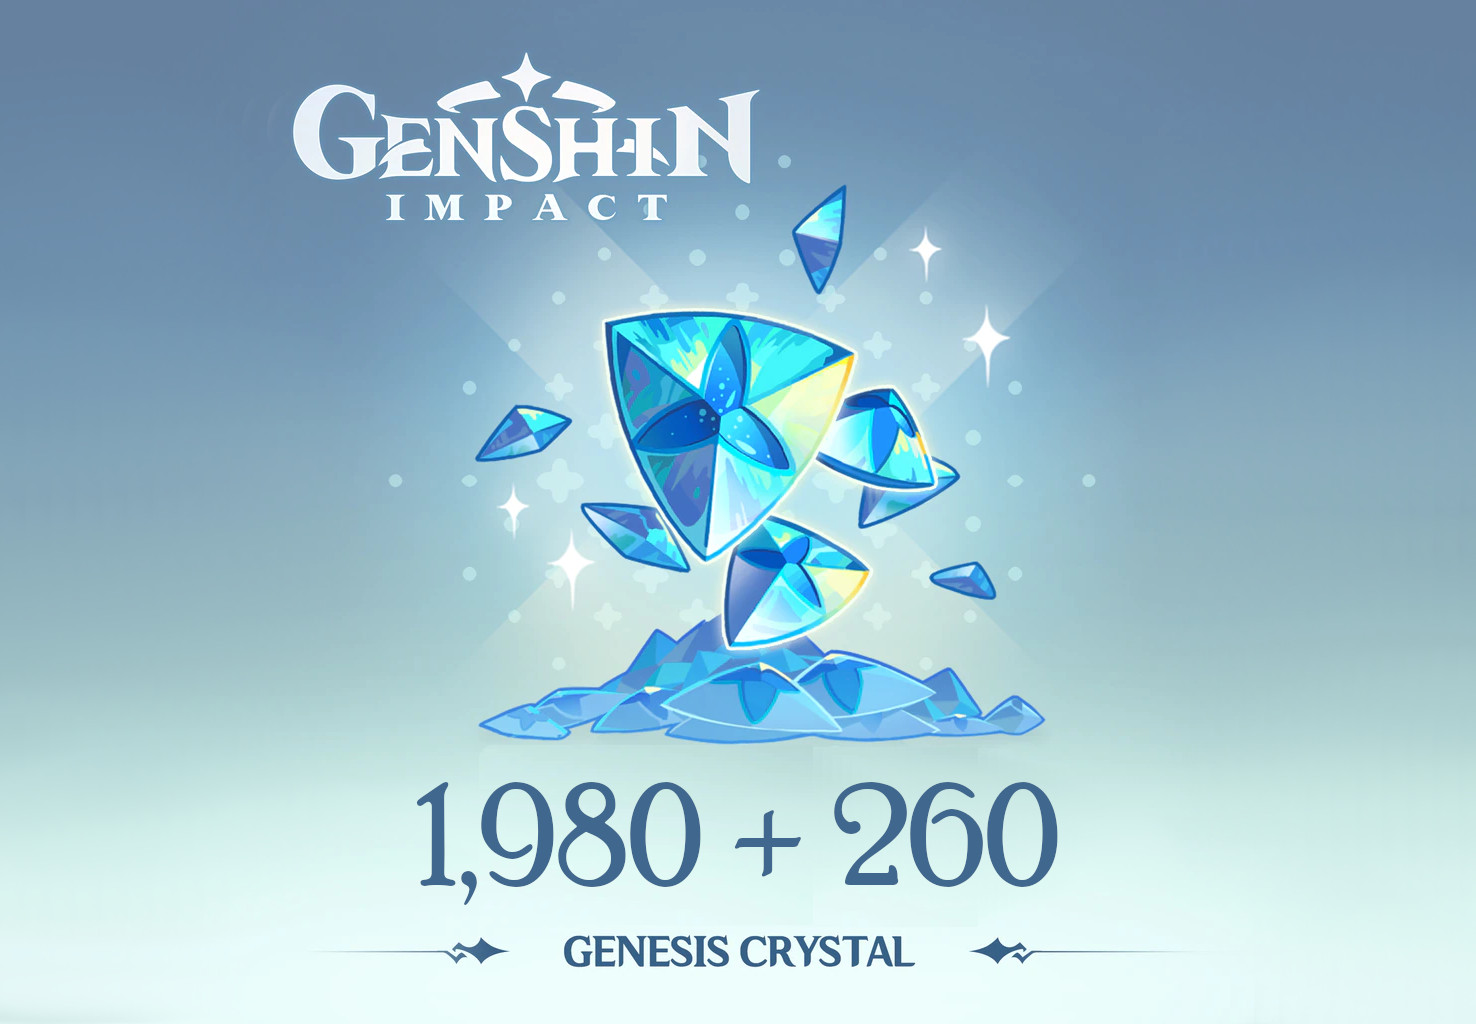 Genshin Impact - 1,980 + 260 Genesis Crystals Reidos Voucher USD 33.9